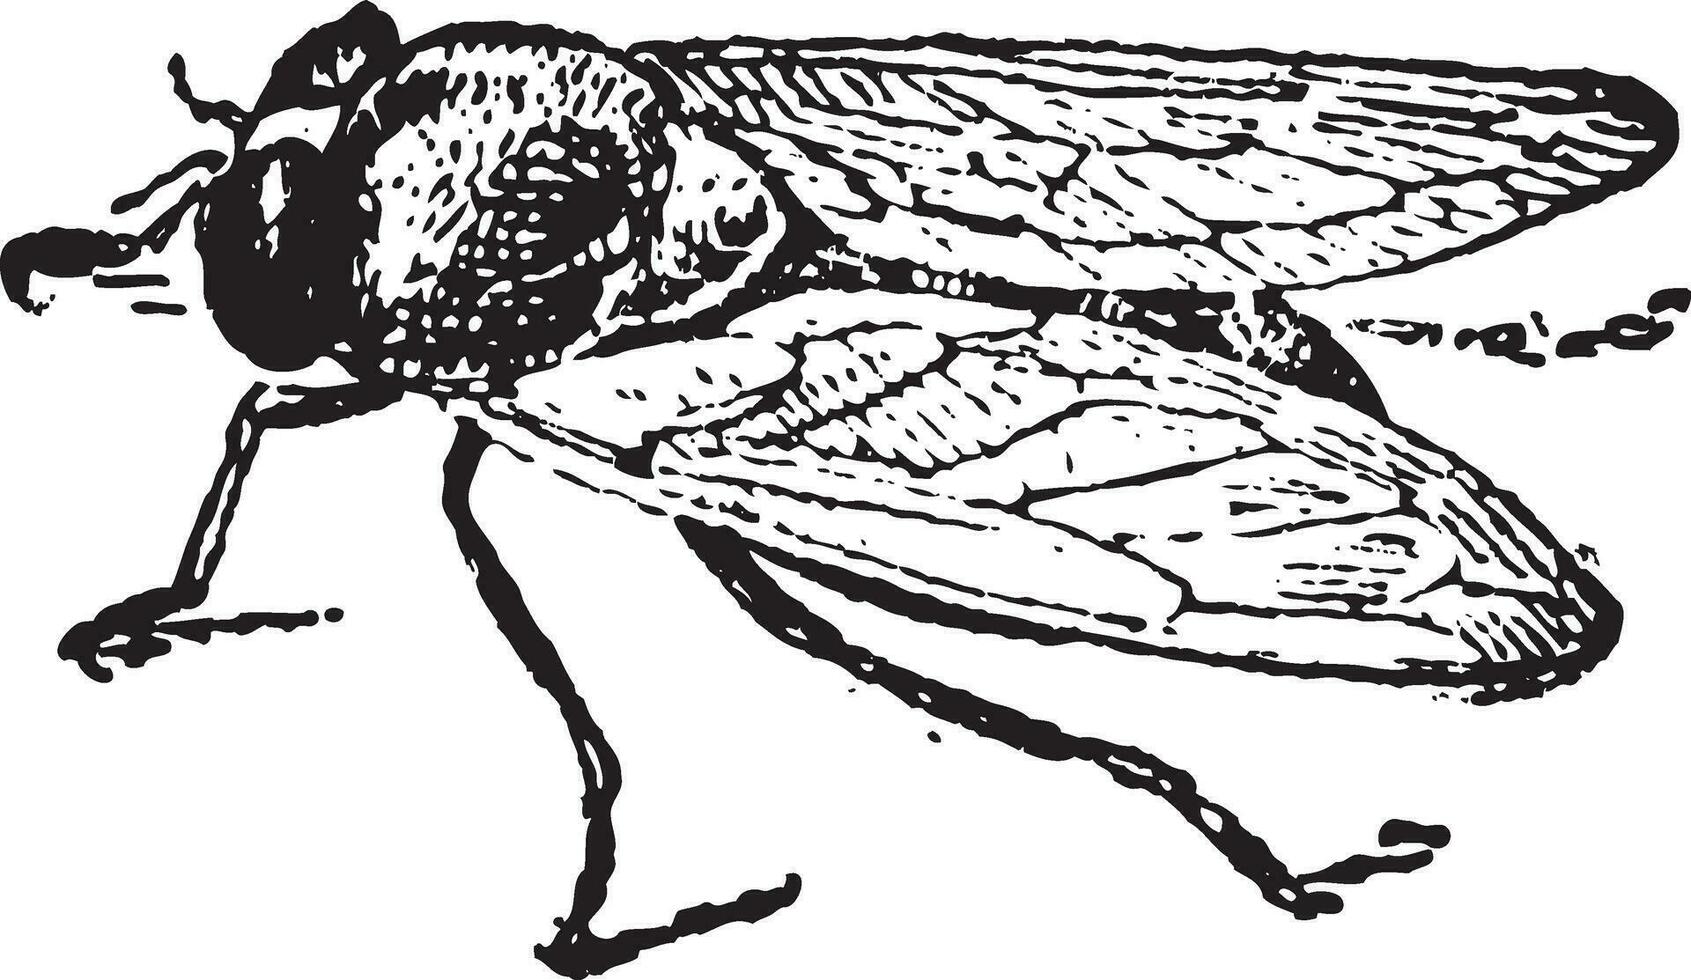 commun fruit mouche ou drosophile mélanogaster, ancien gravure vecteur